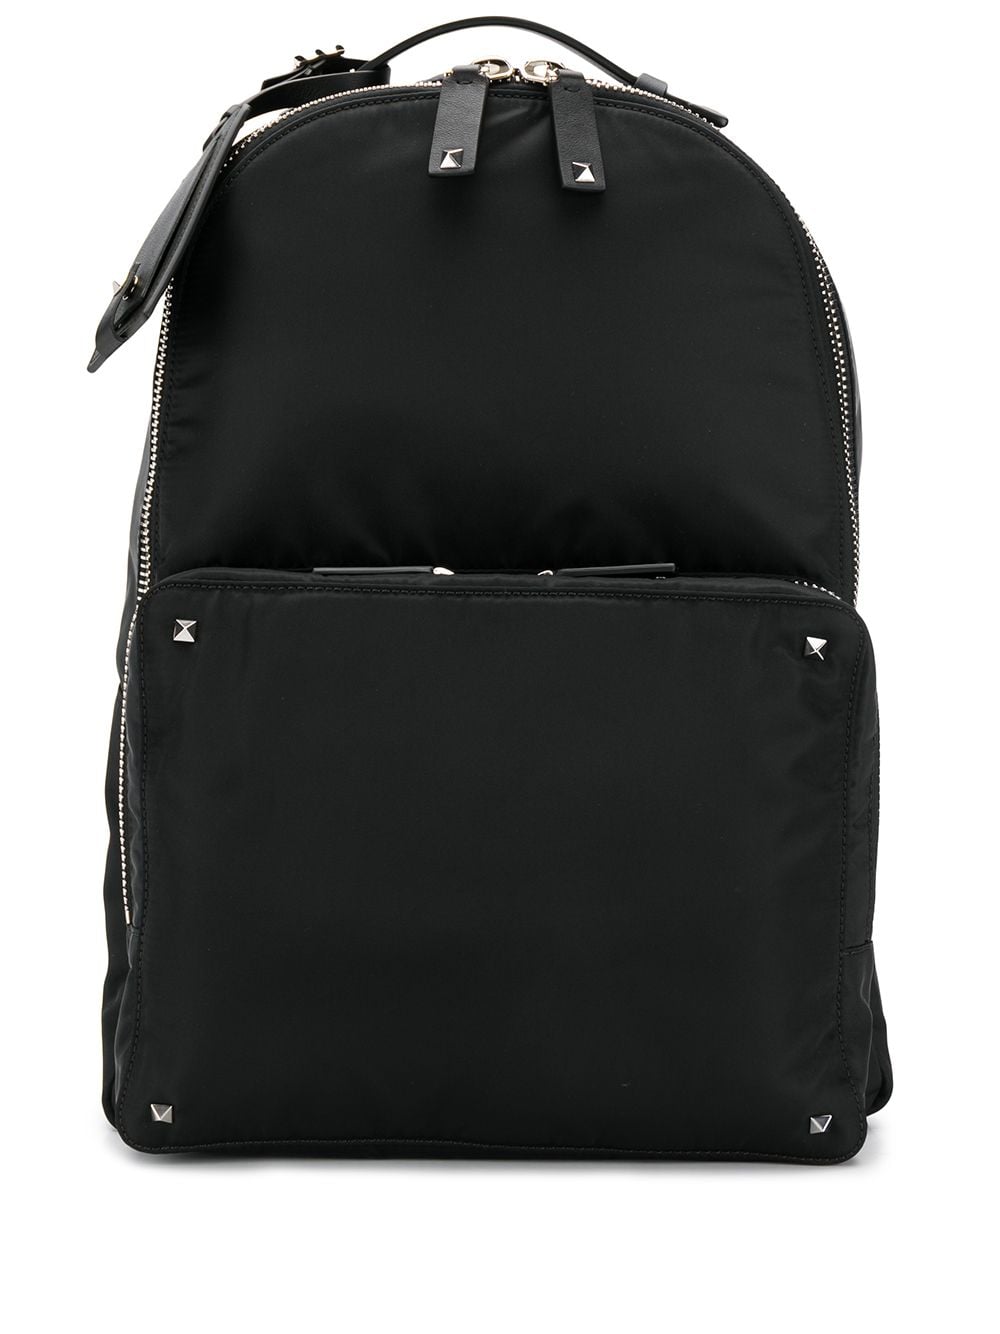 фото Valentino garavani рюкзак с логотипом